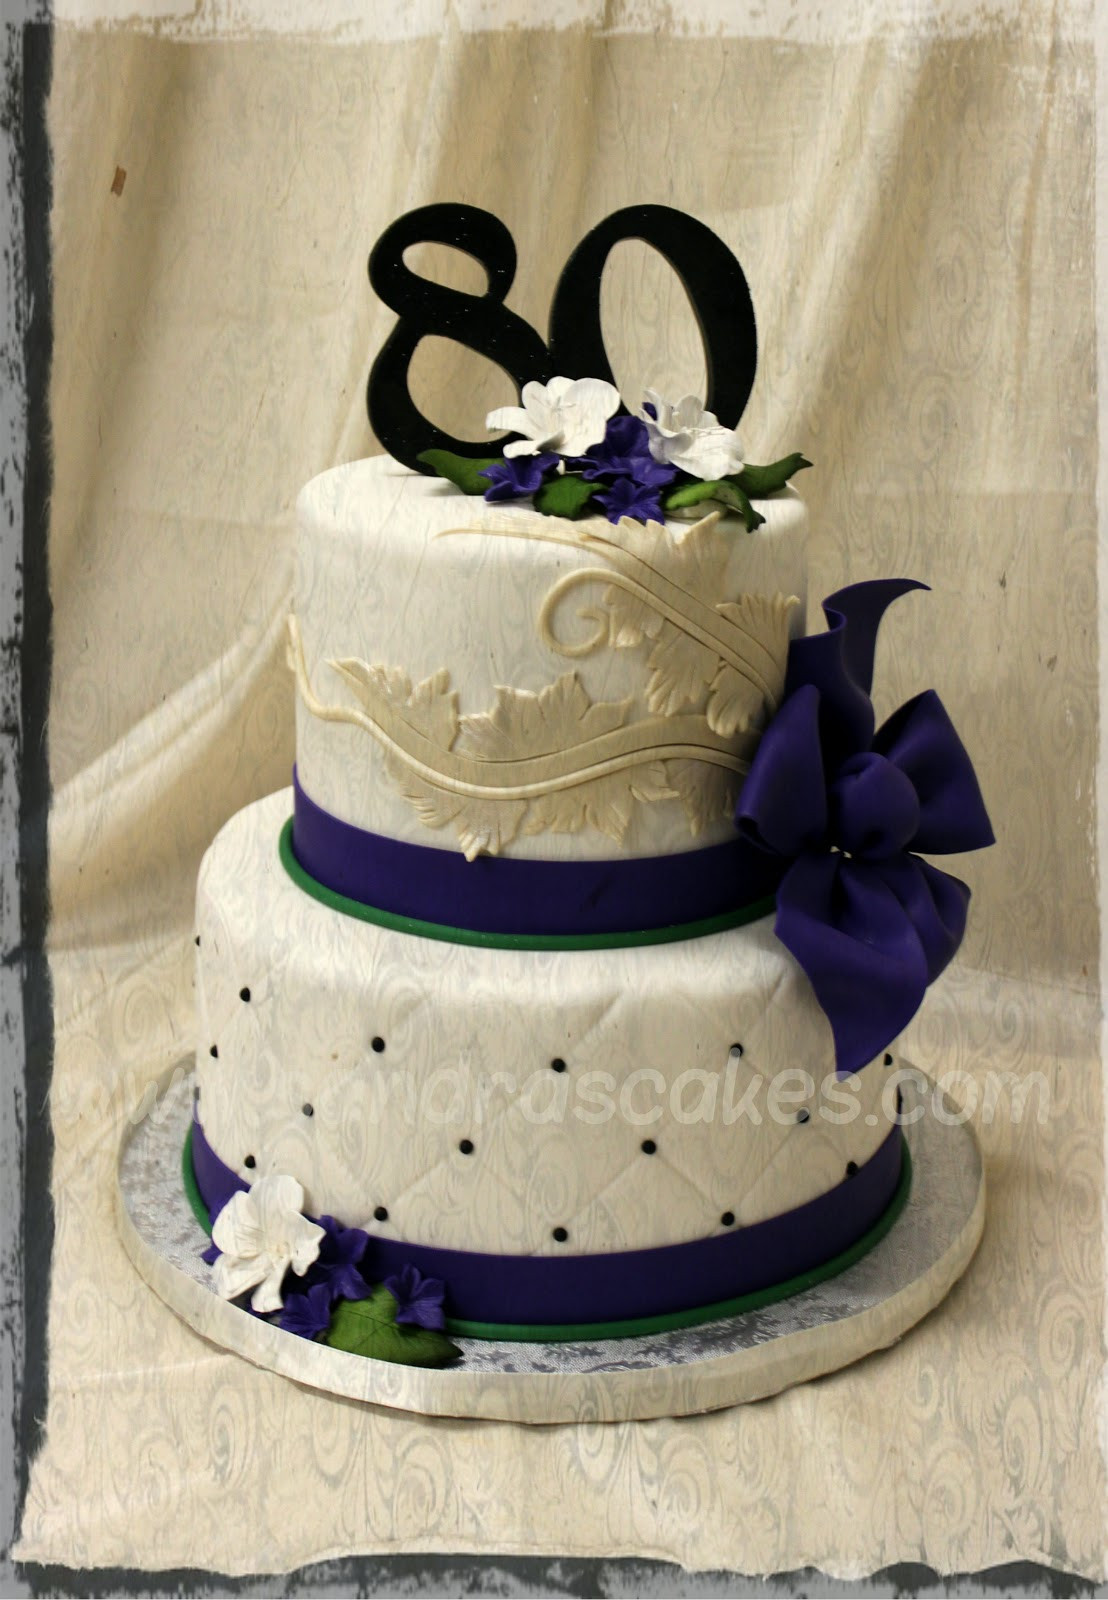 Elegant Birthday Cakes
 BIRTHDAY CAKES